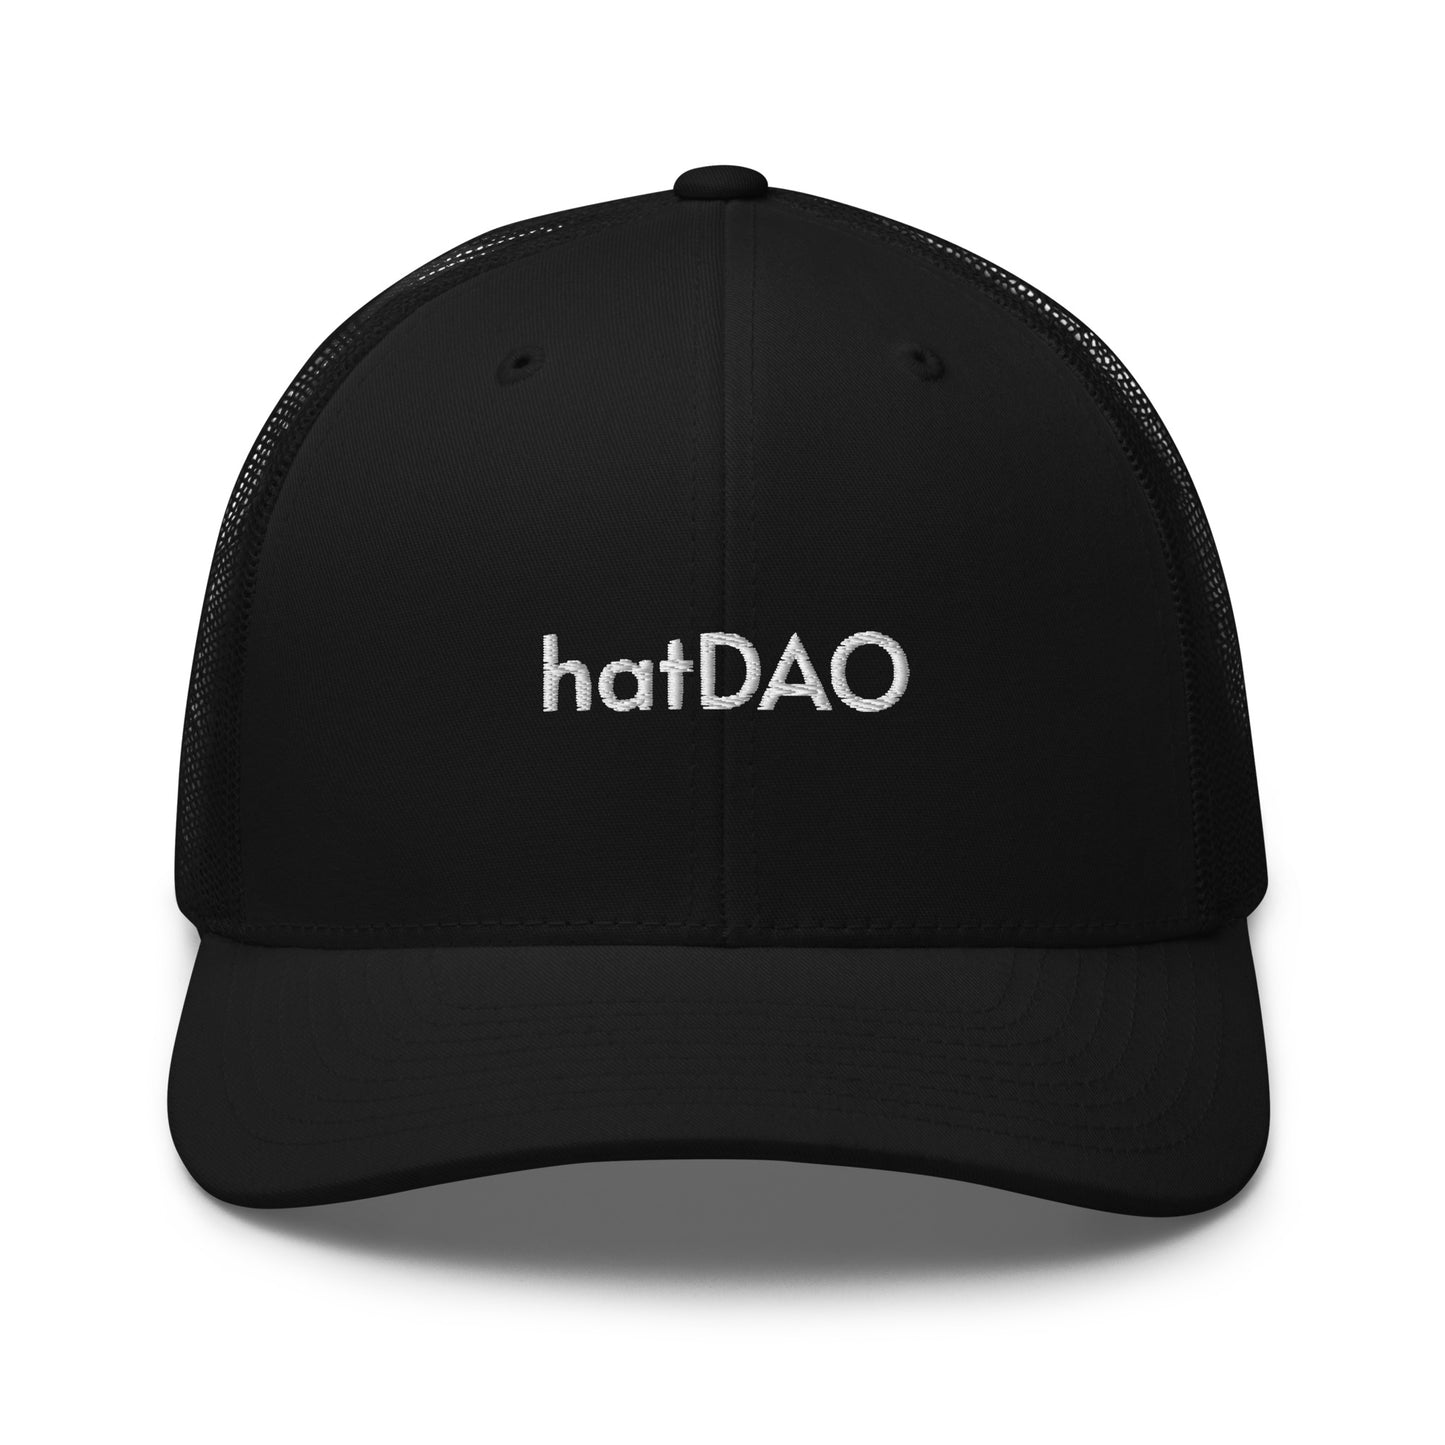 hatDAO Trucker Cap